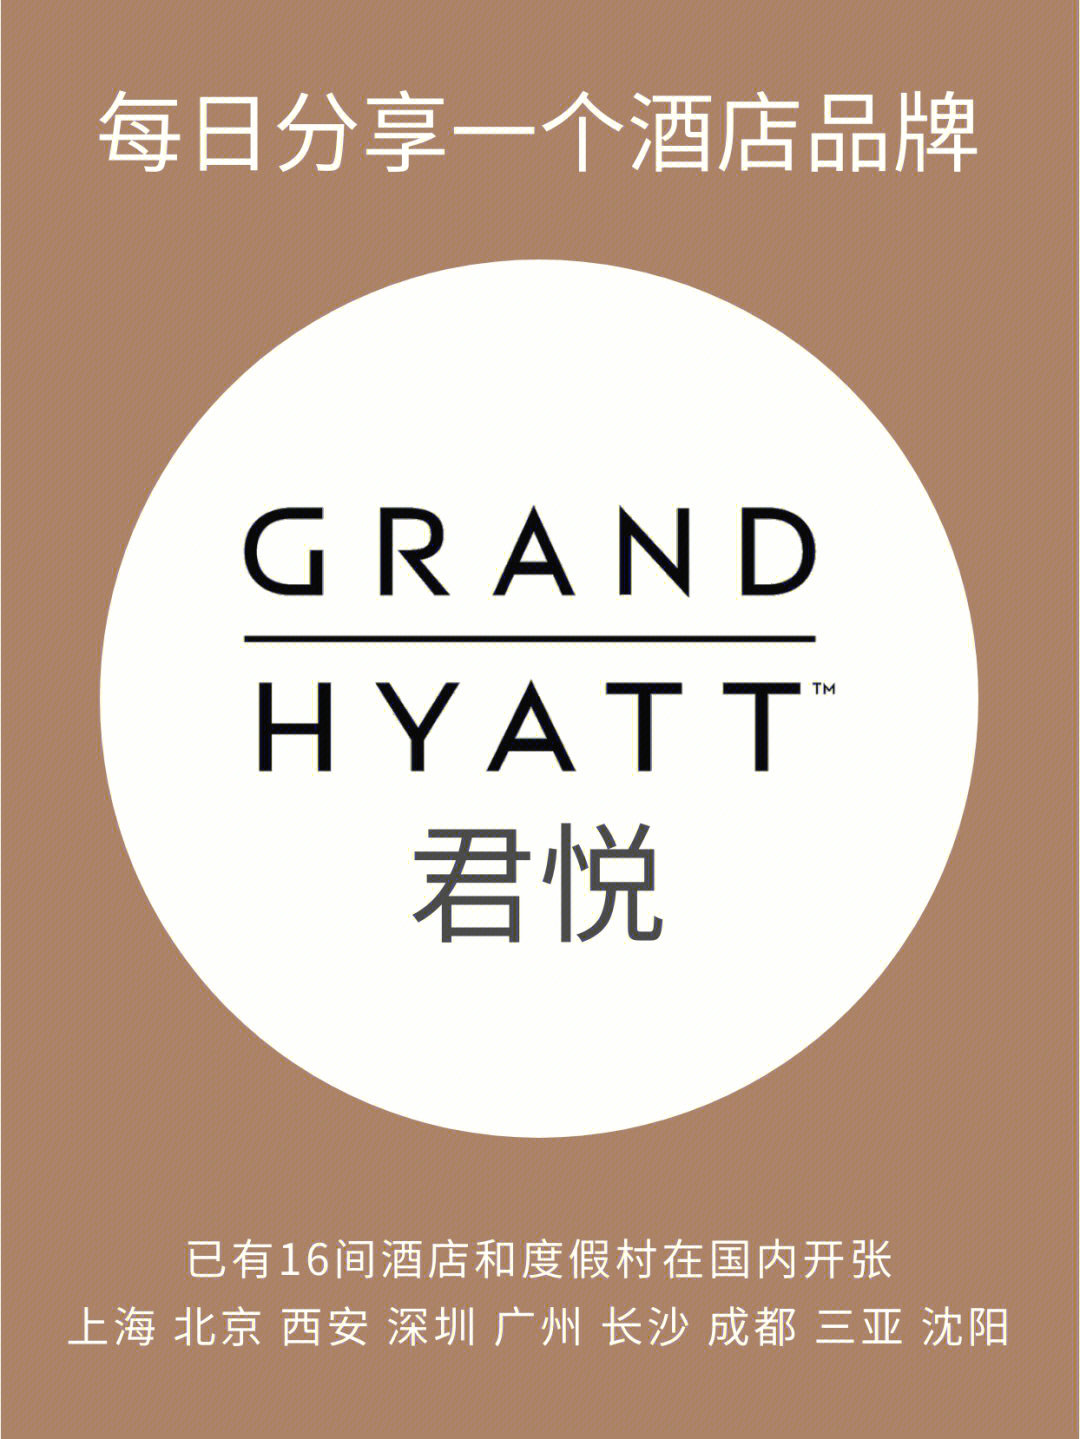 长沙君悦酒店logo图片